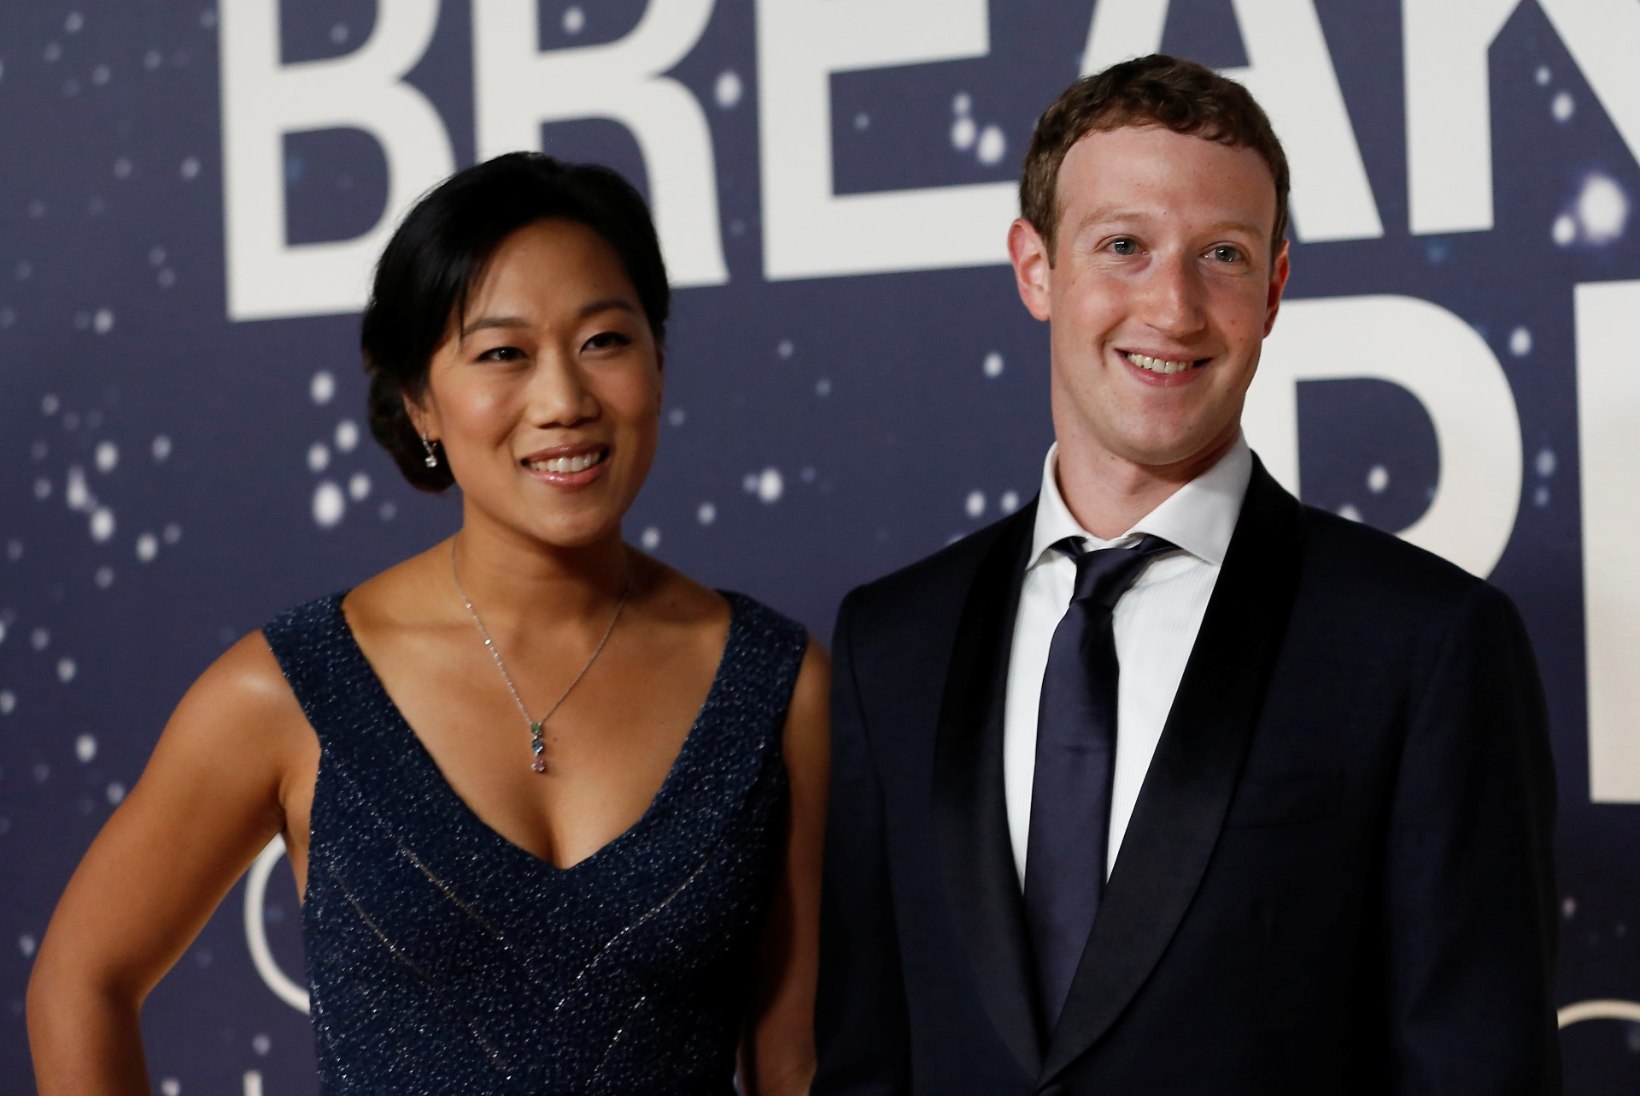 Suurärimees Mark Zuckerberg paljastas hea suhte saladuse